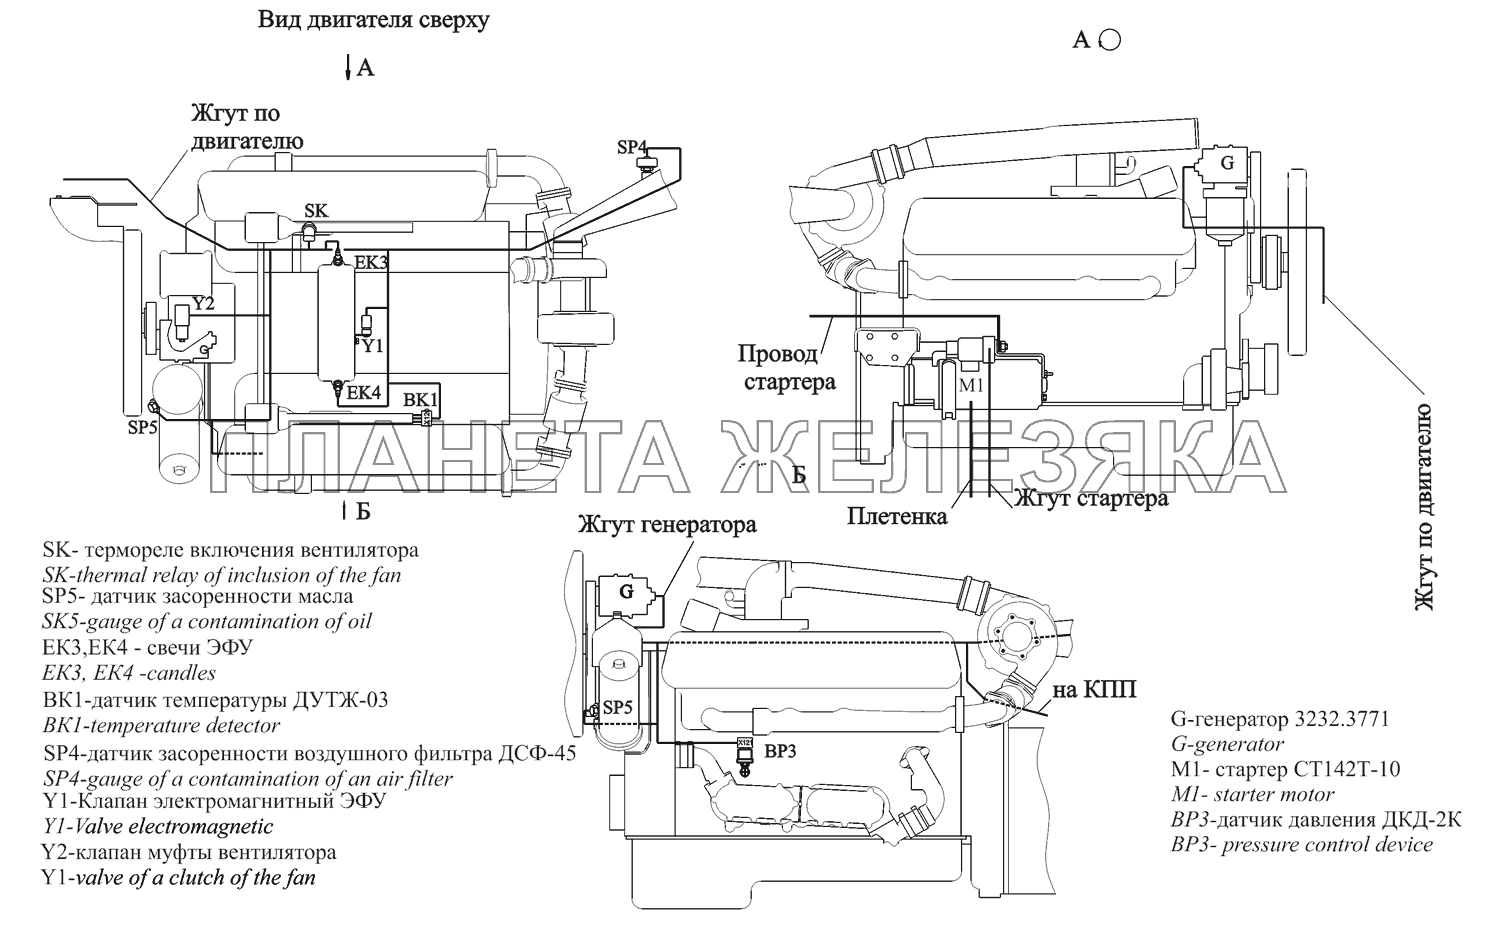 Расположение разъемов и элементов электрооборудования на двигателе ЯМЗ-238ДЕ2 МАЗ-631705